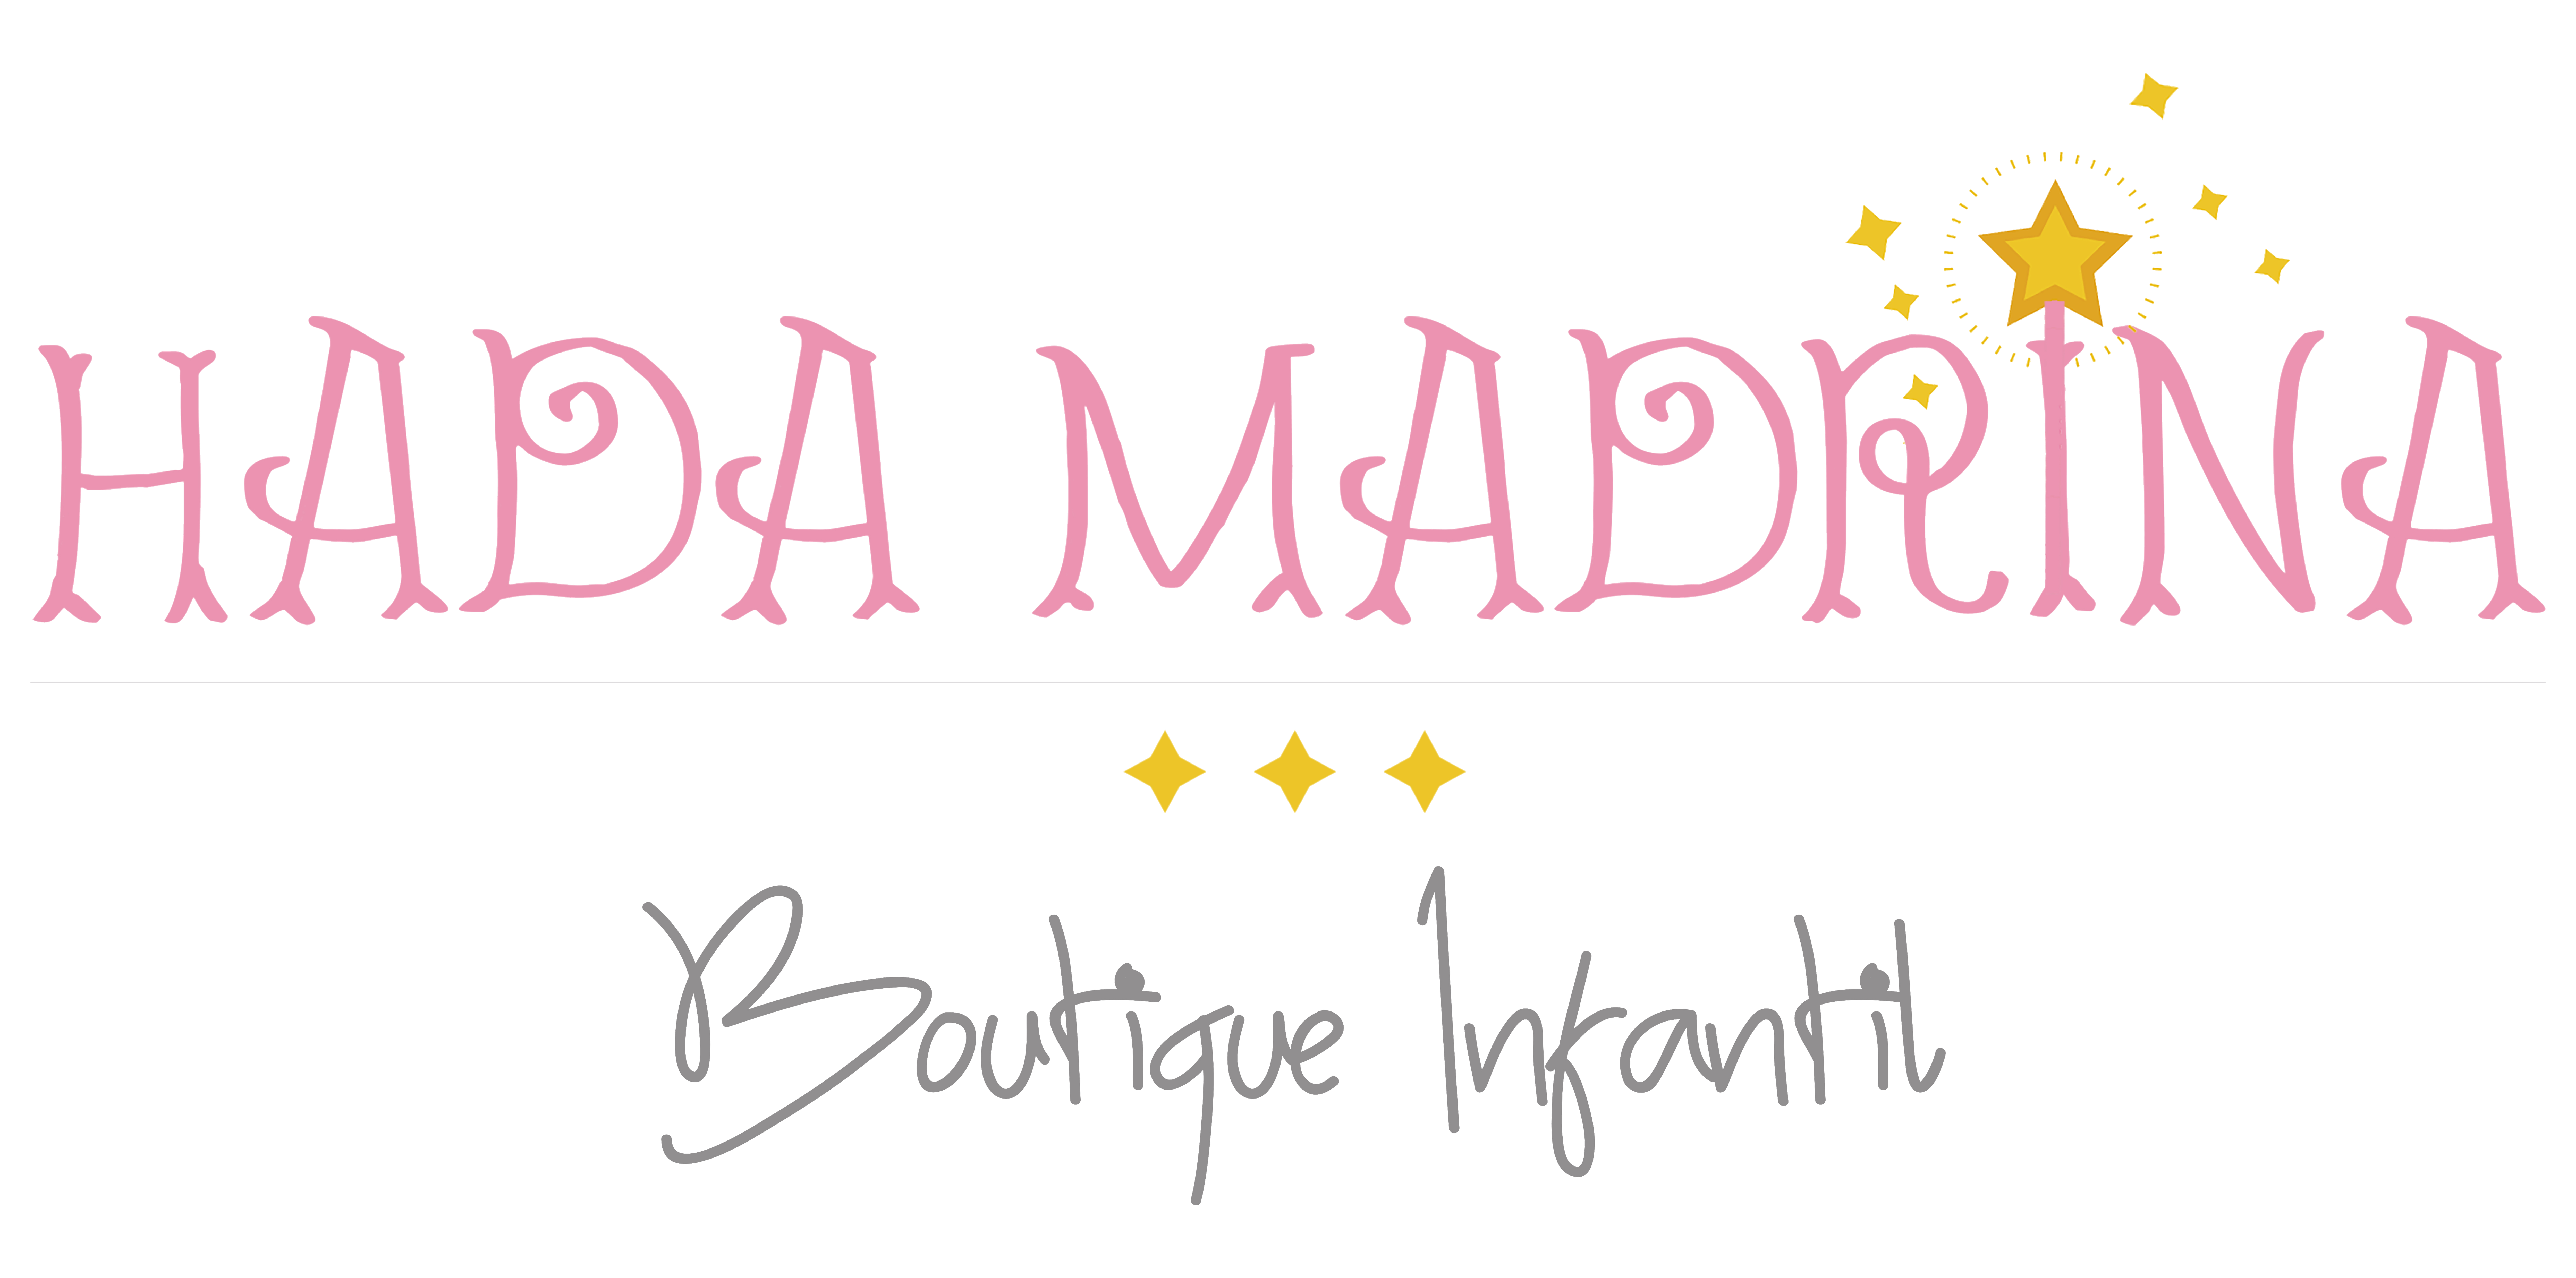 Hada Madrina Boutique Infantil